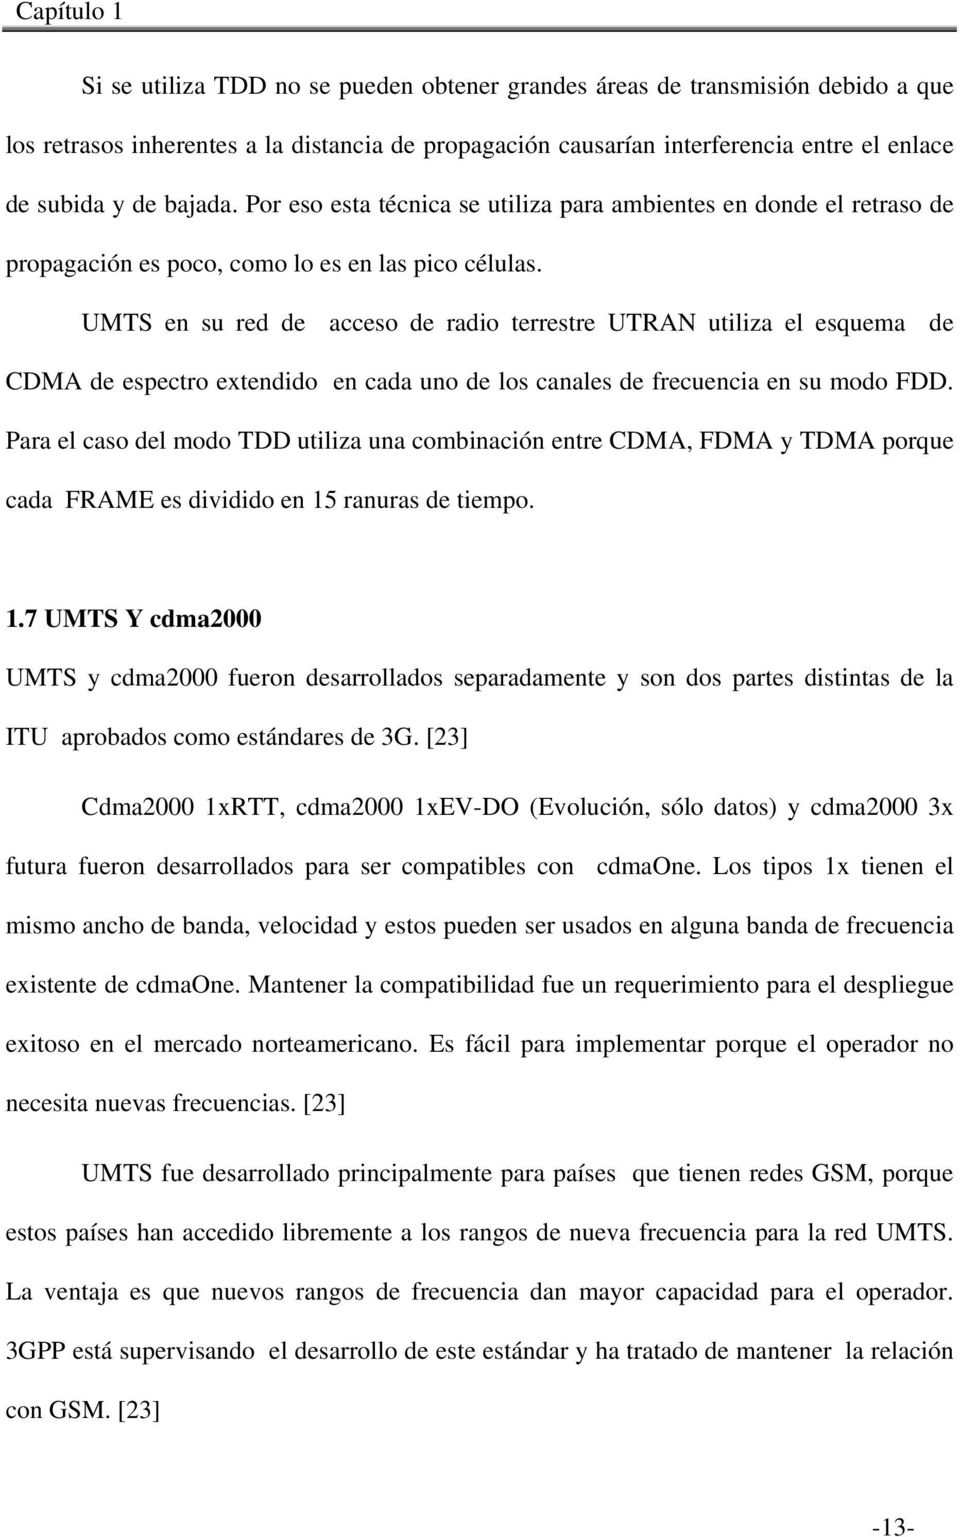 UMTS en su red de acceso de radio terrestre UTRAN utiliza el esquema de CDMA de espectro extendido en cada uno de los canales de frecuencia en su modo FDD.